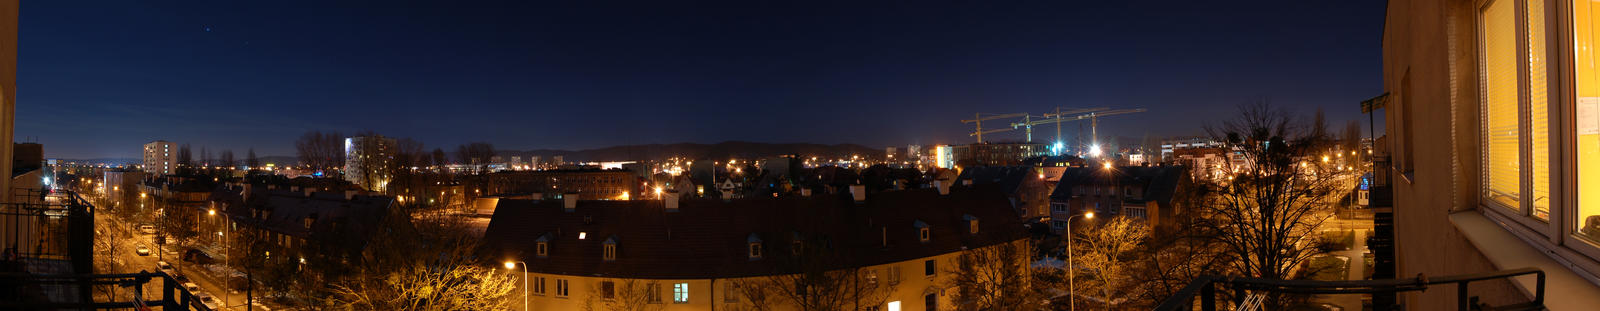 Gdansk - Night View